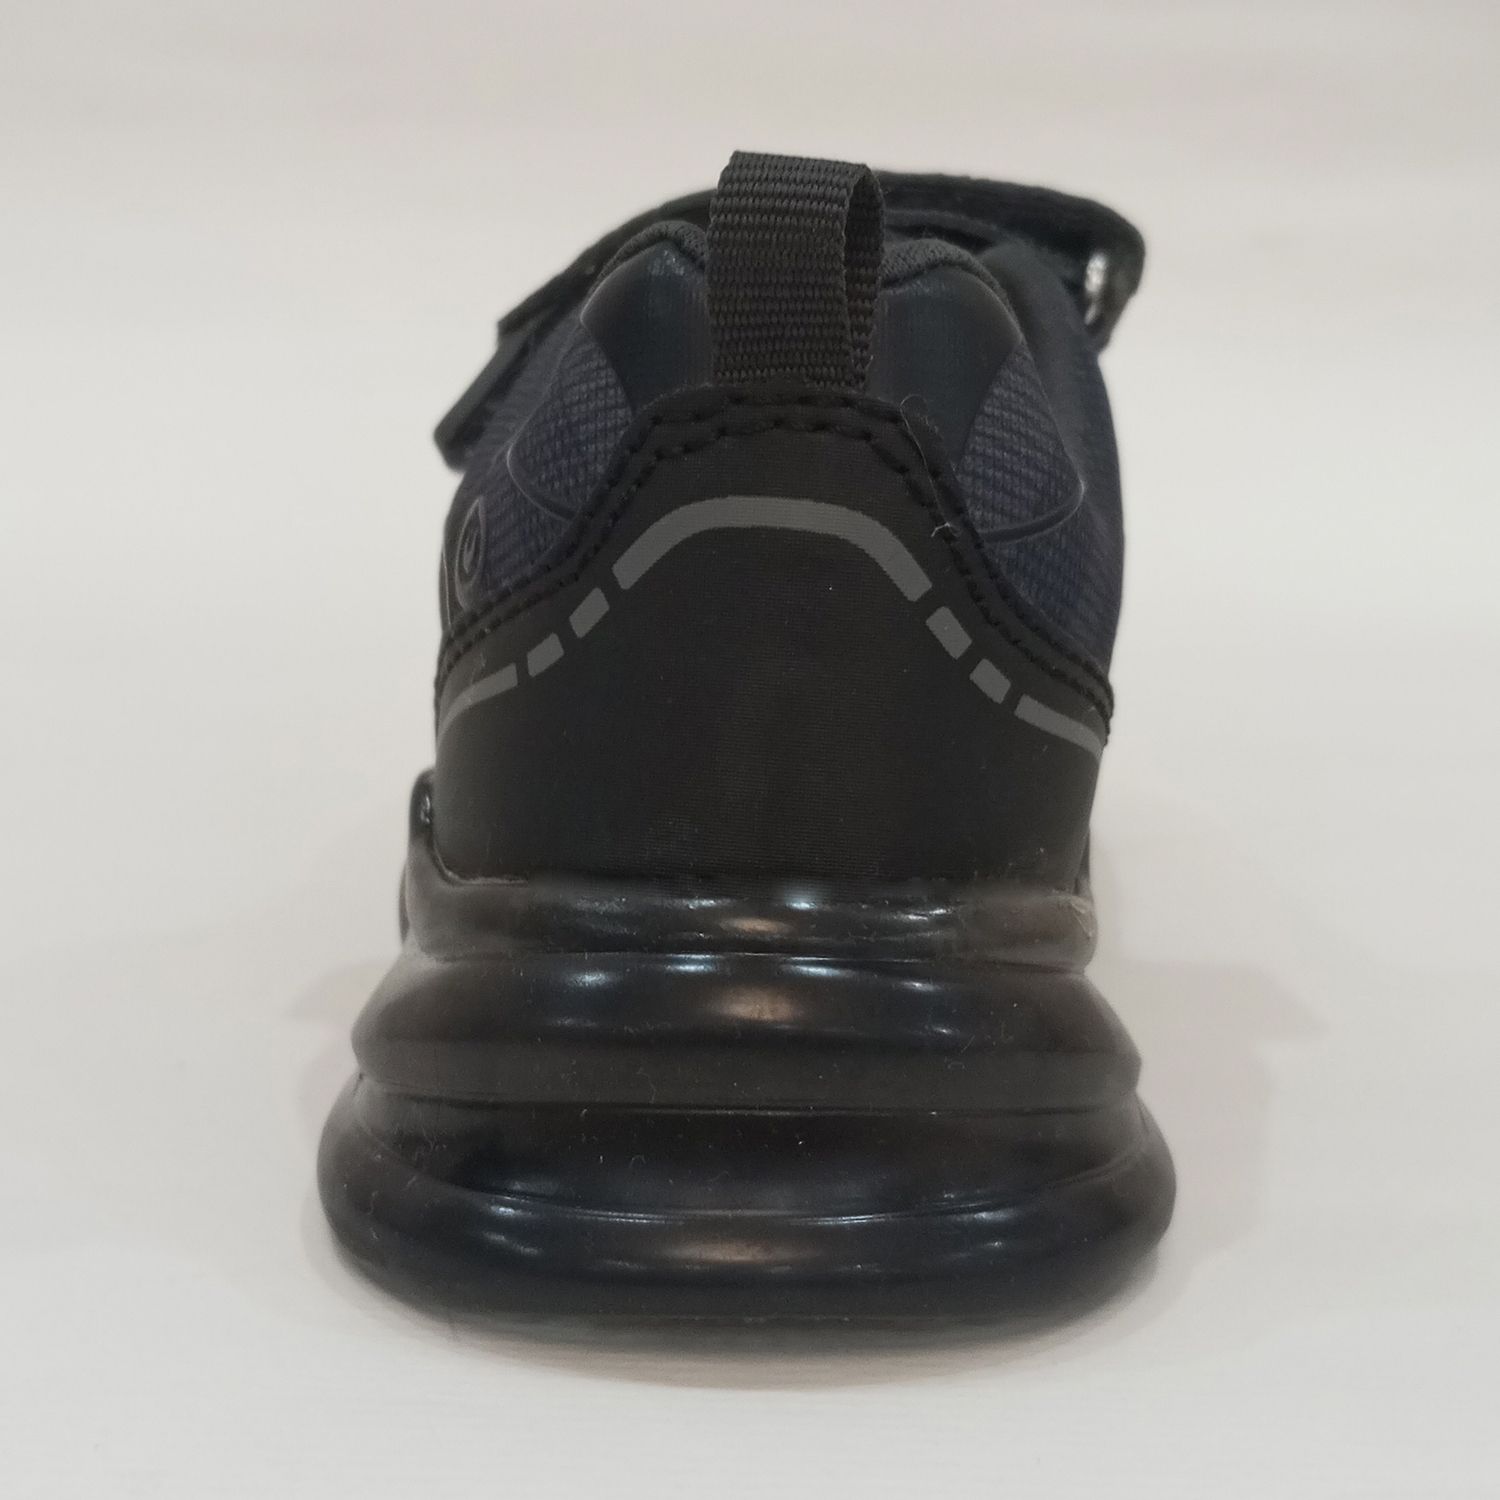  کفش مخصوص پیاده روی والک ایکس مدل چراغدار -  - 4